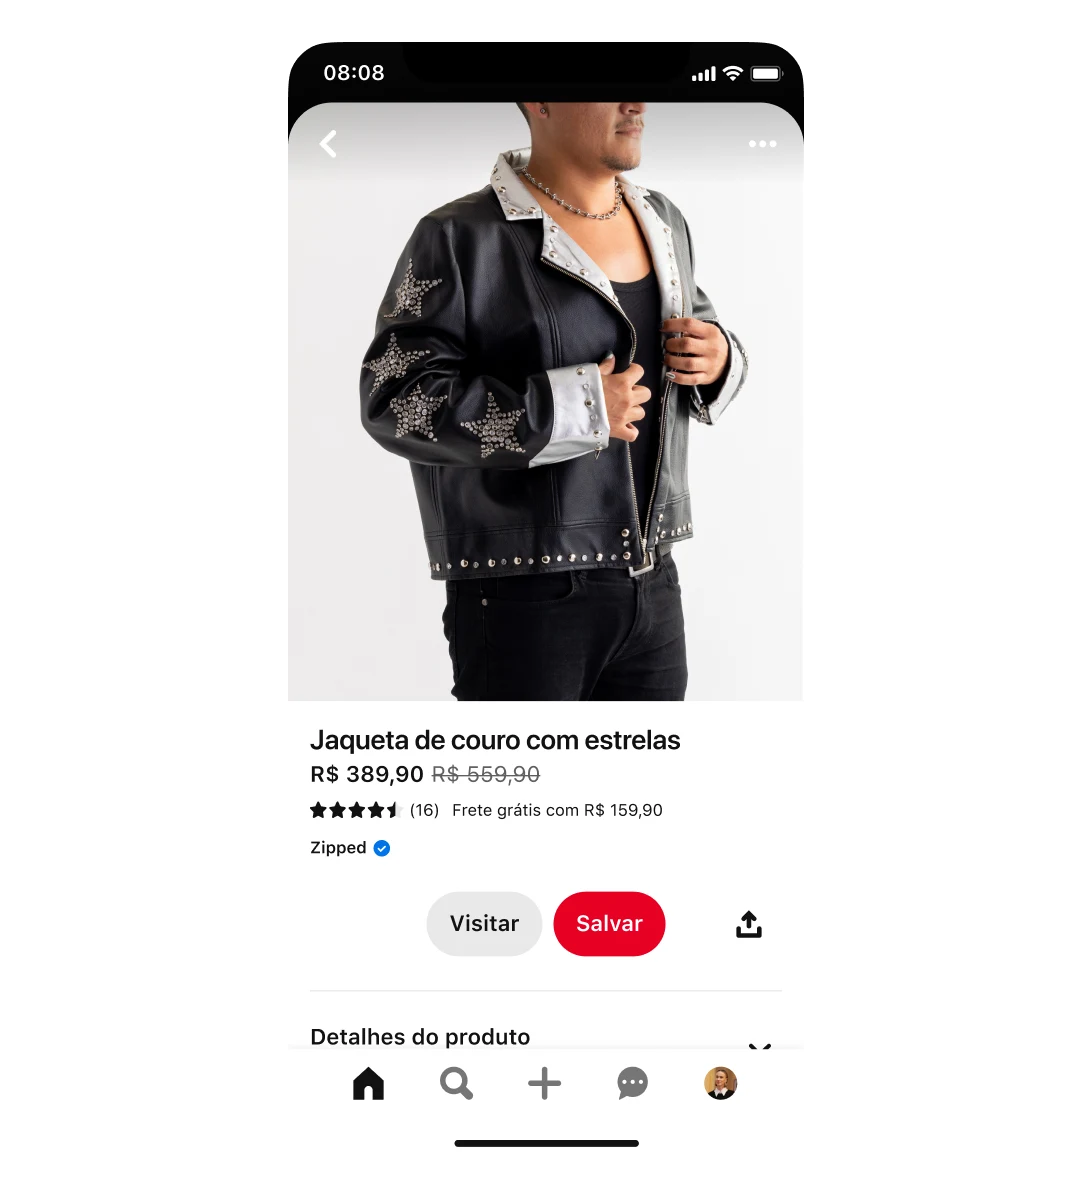 Visualização de tela de dispositivo móvel de anúncio de shopping de jaqueta de couro falso com estrelas. A jaqueta está em promoção, de R$ 559,90 por R$ 389,90. O anúncio contém um homem usando a jaqueta.